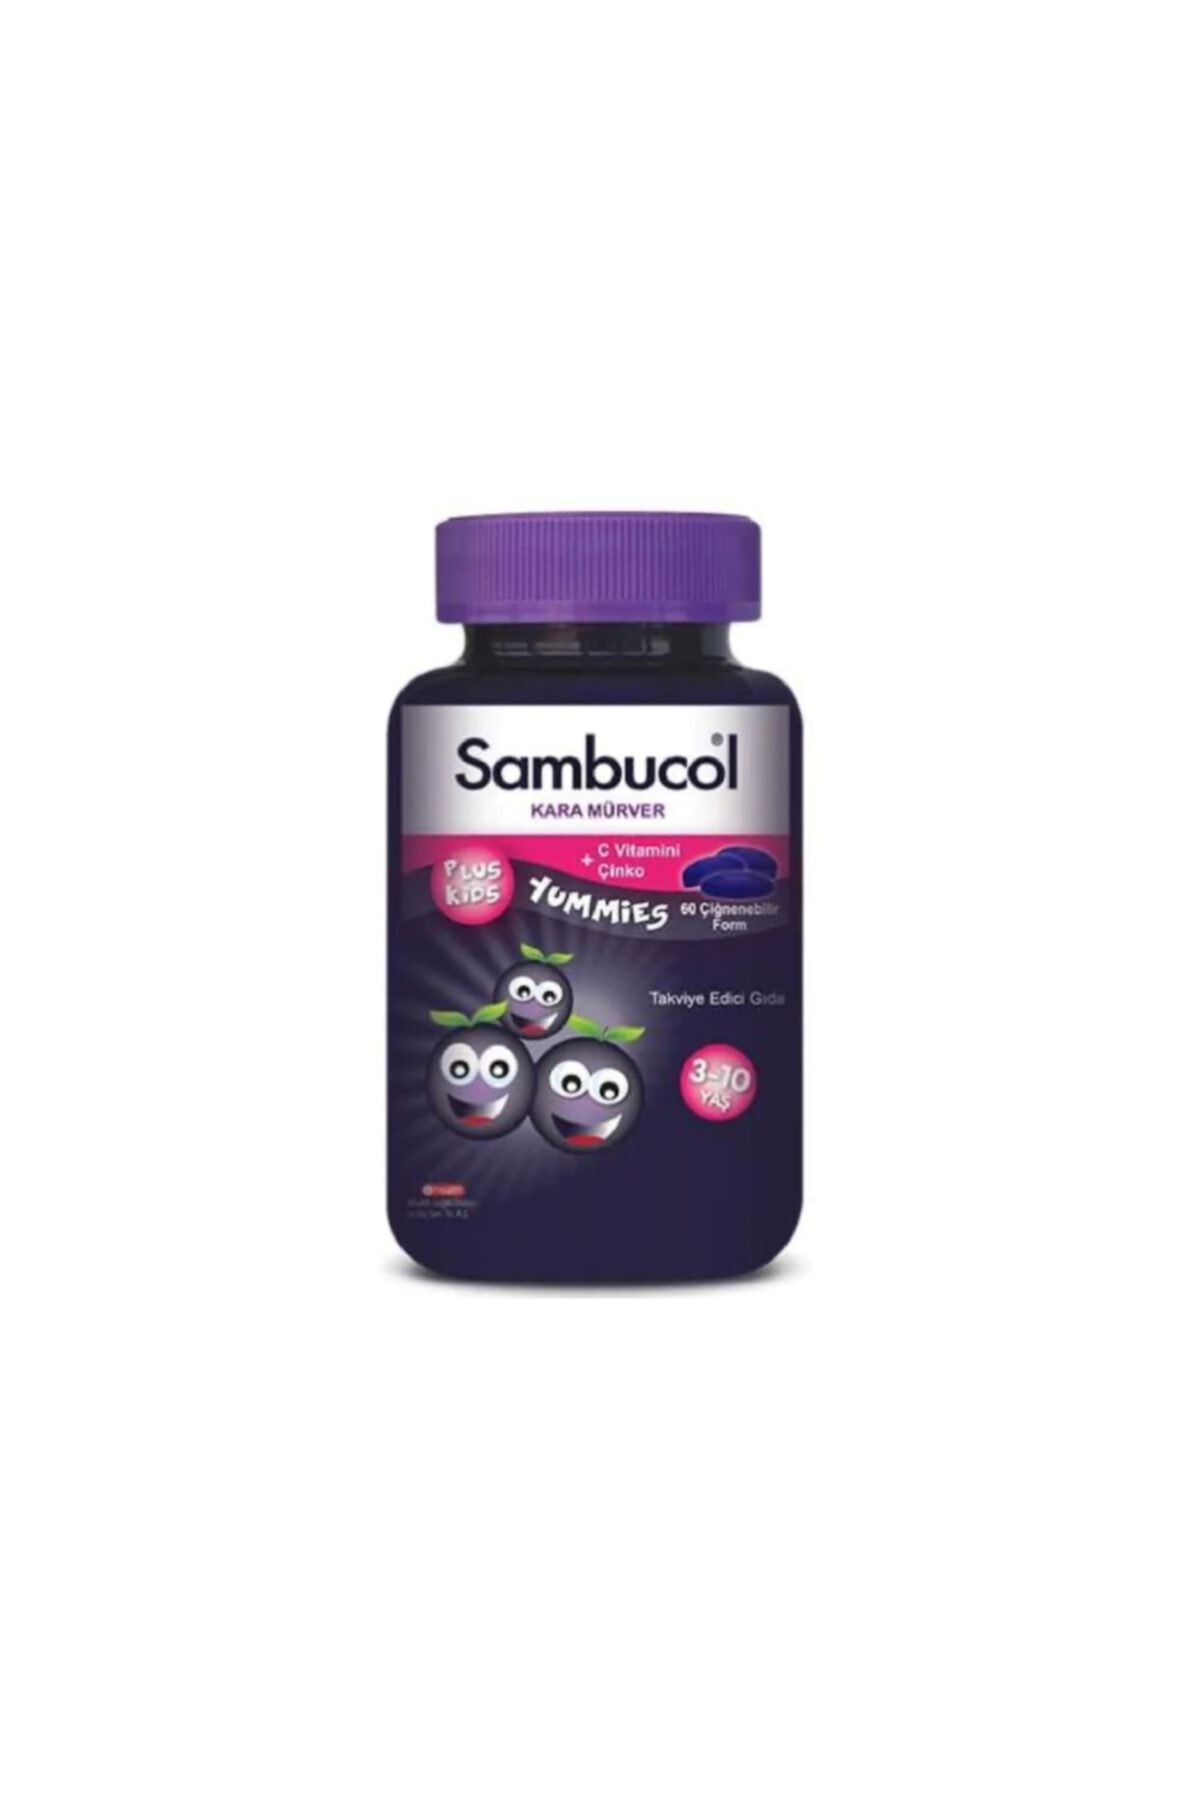 Sambucol Plus Kids Yummies Çocuklar Için Takviye Edici Gıda(kara Mürver) 60 Tablet